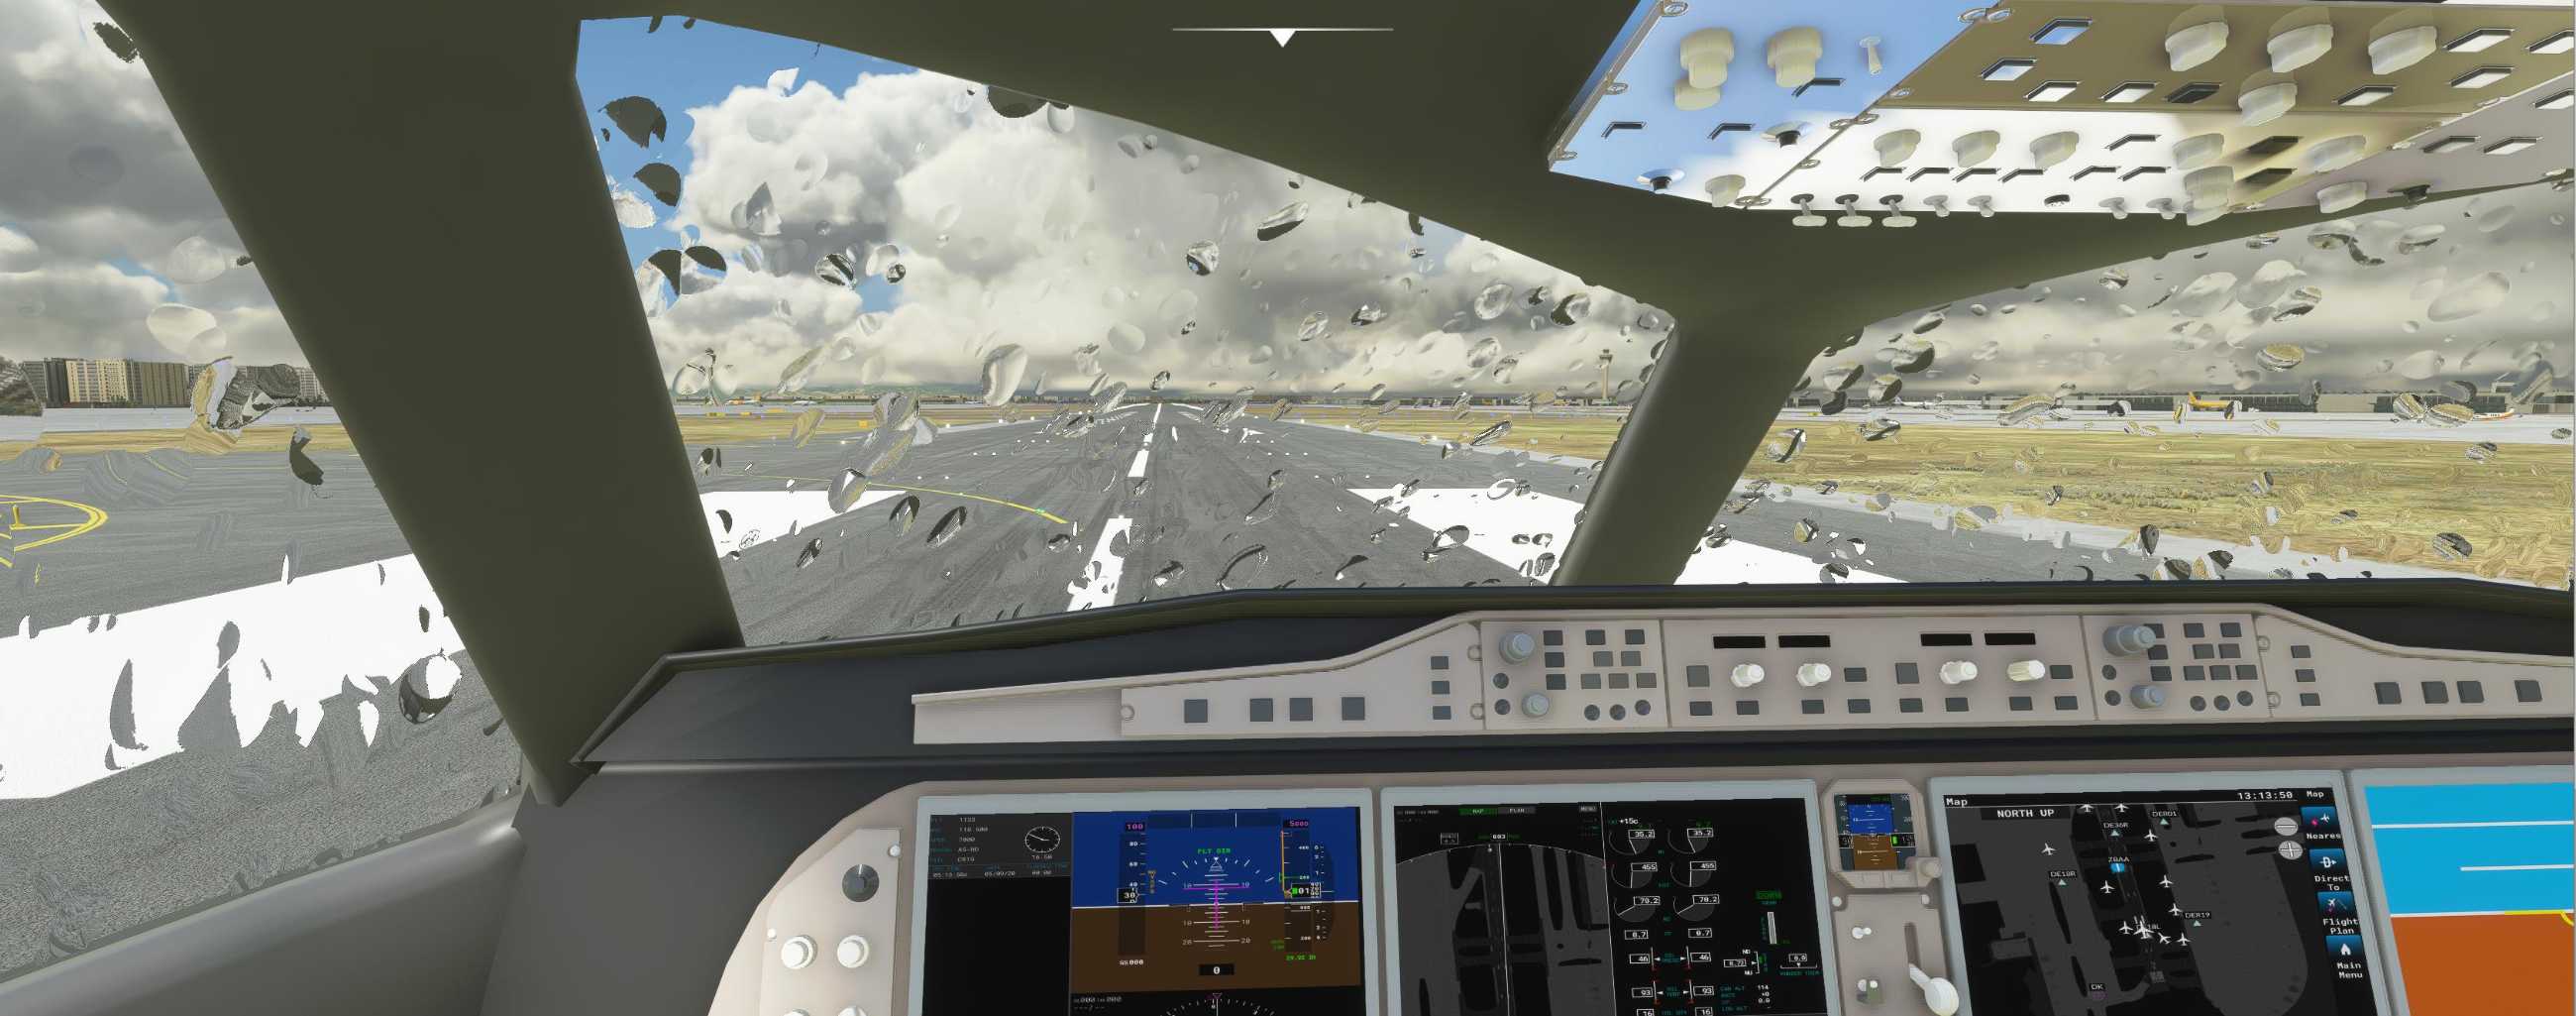 FYCYC-C919 国产大飞机机模 微软模拟飞行演示-7694 